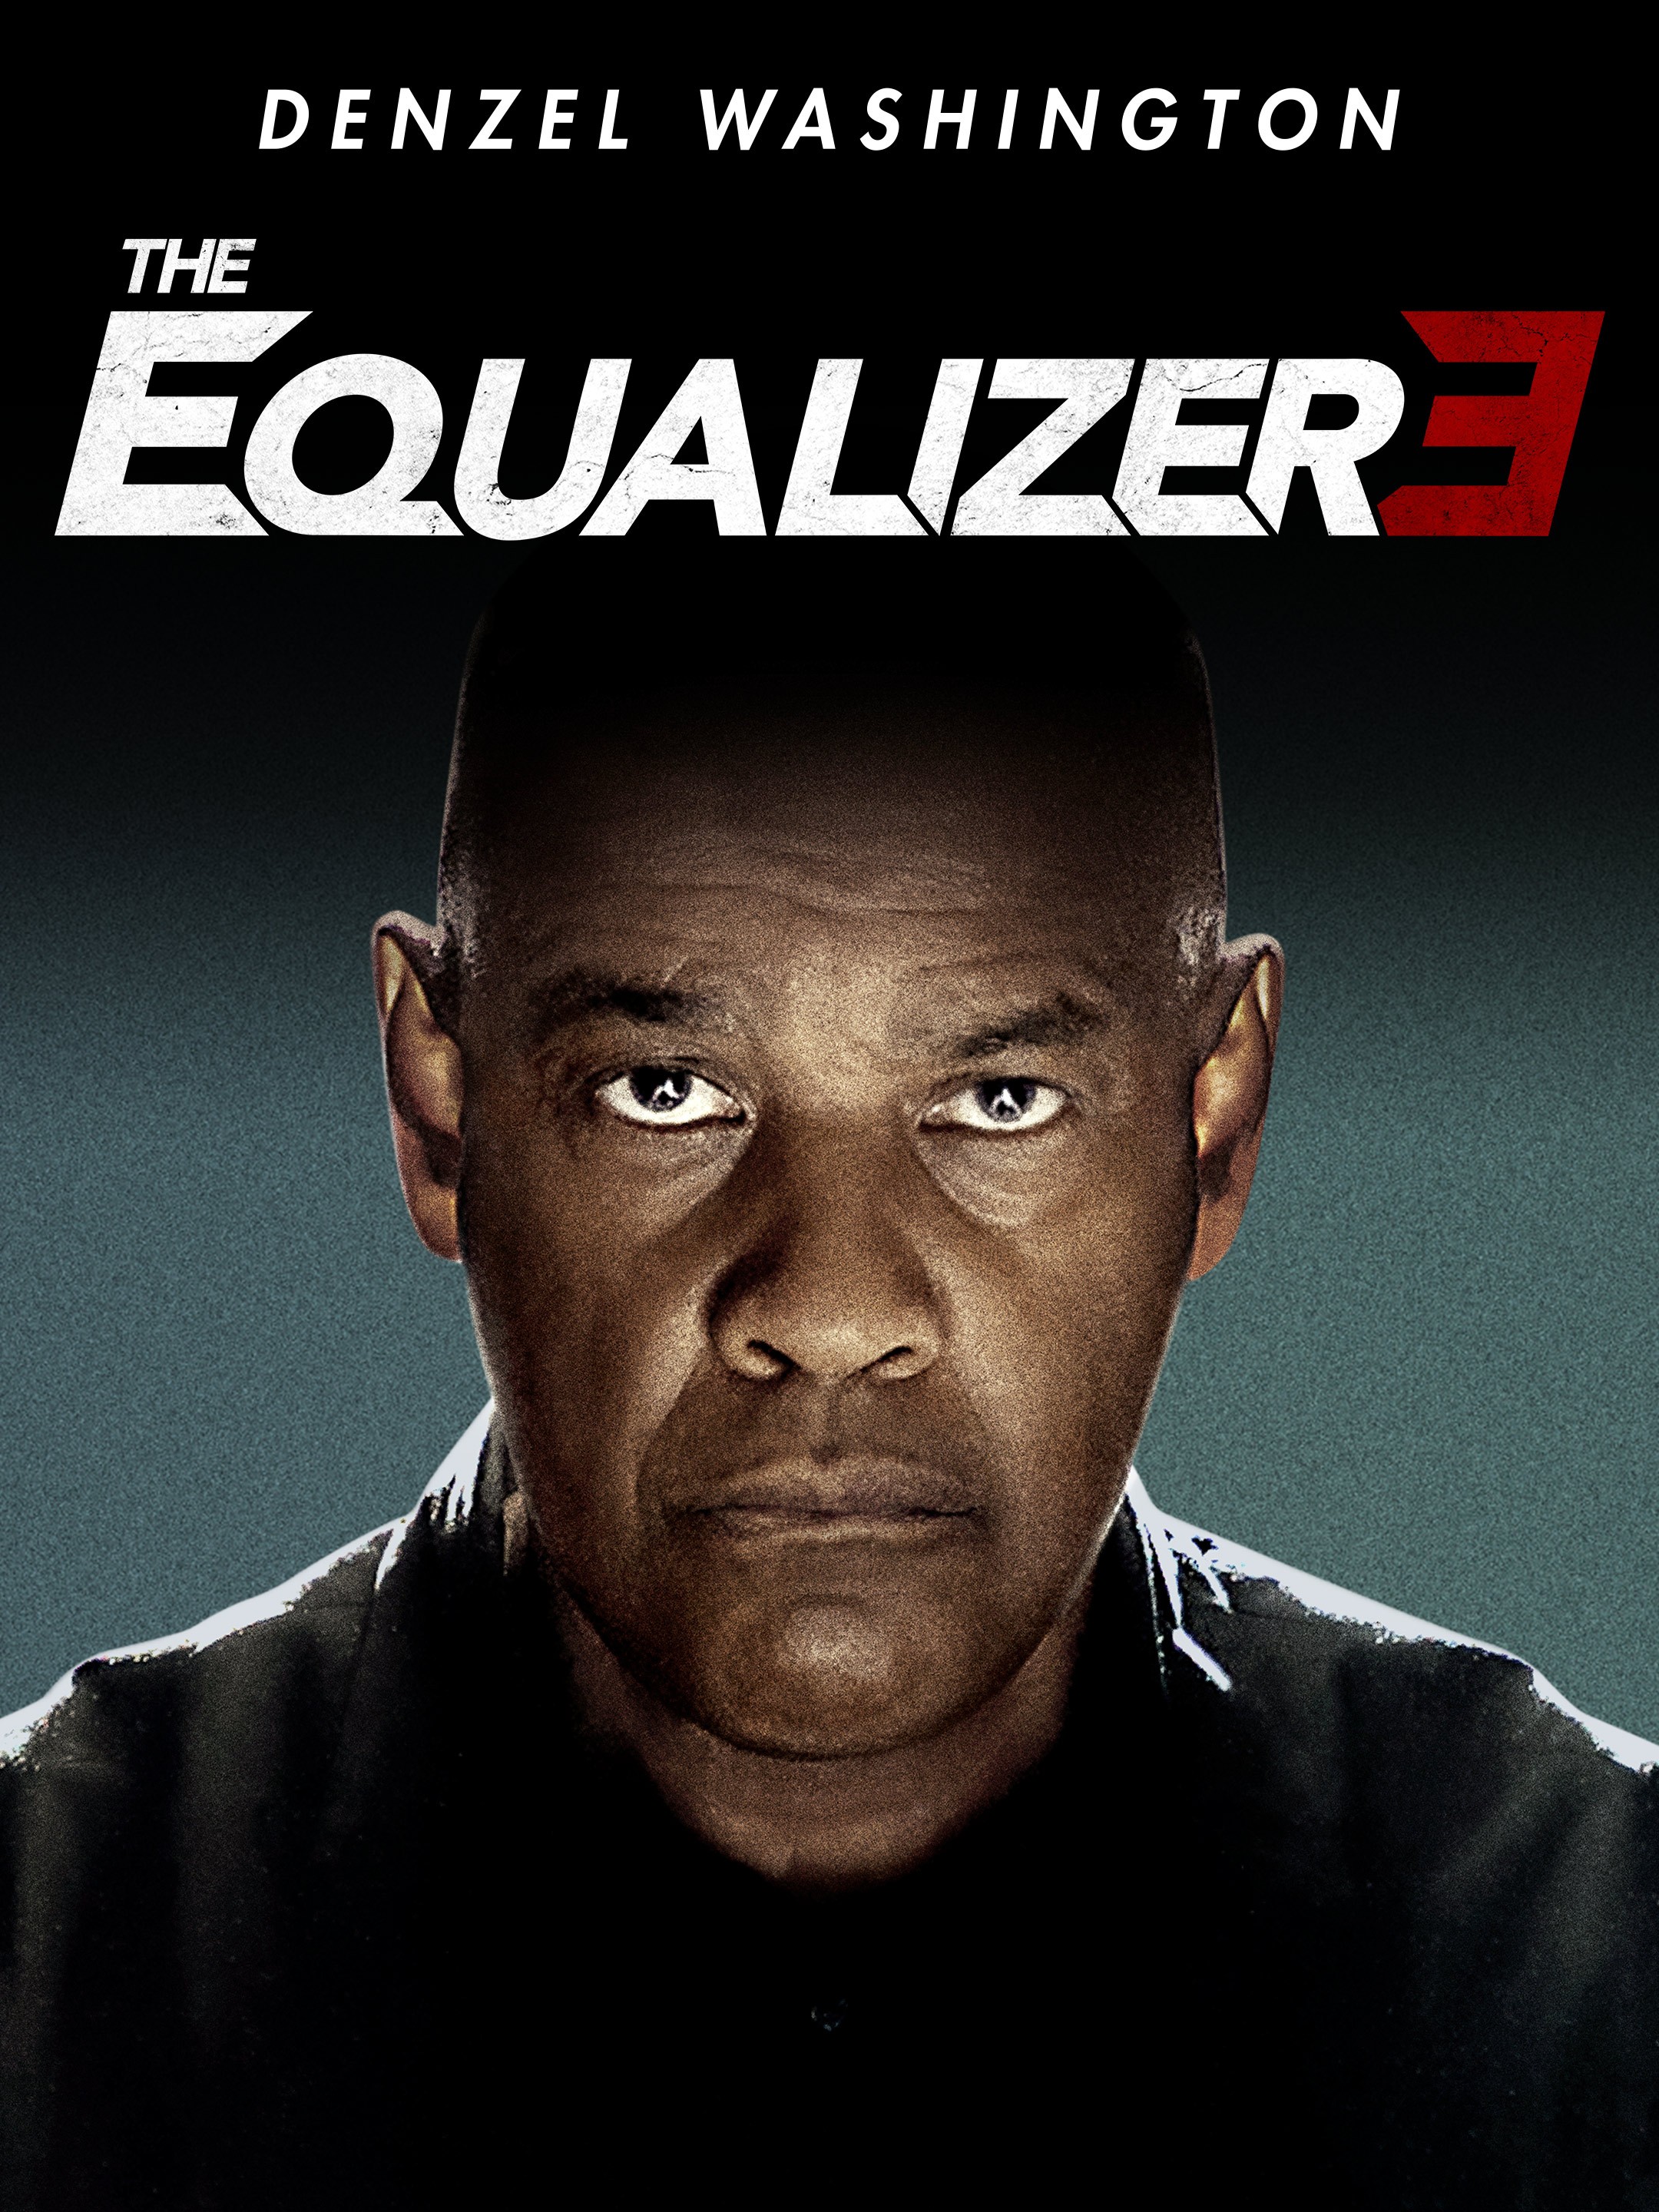 The Equalizer 3' Review: Cinema Paradenzel